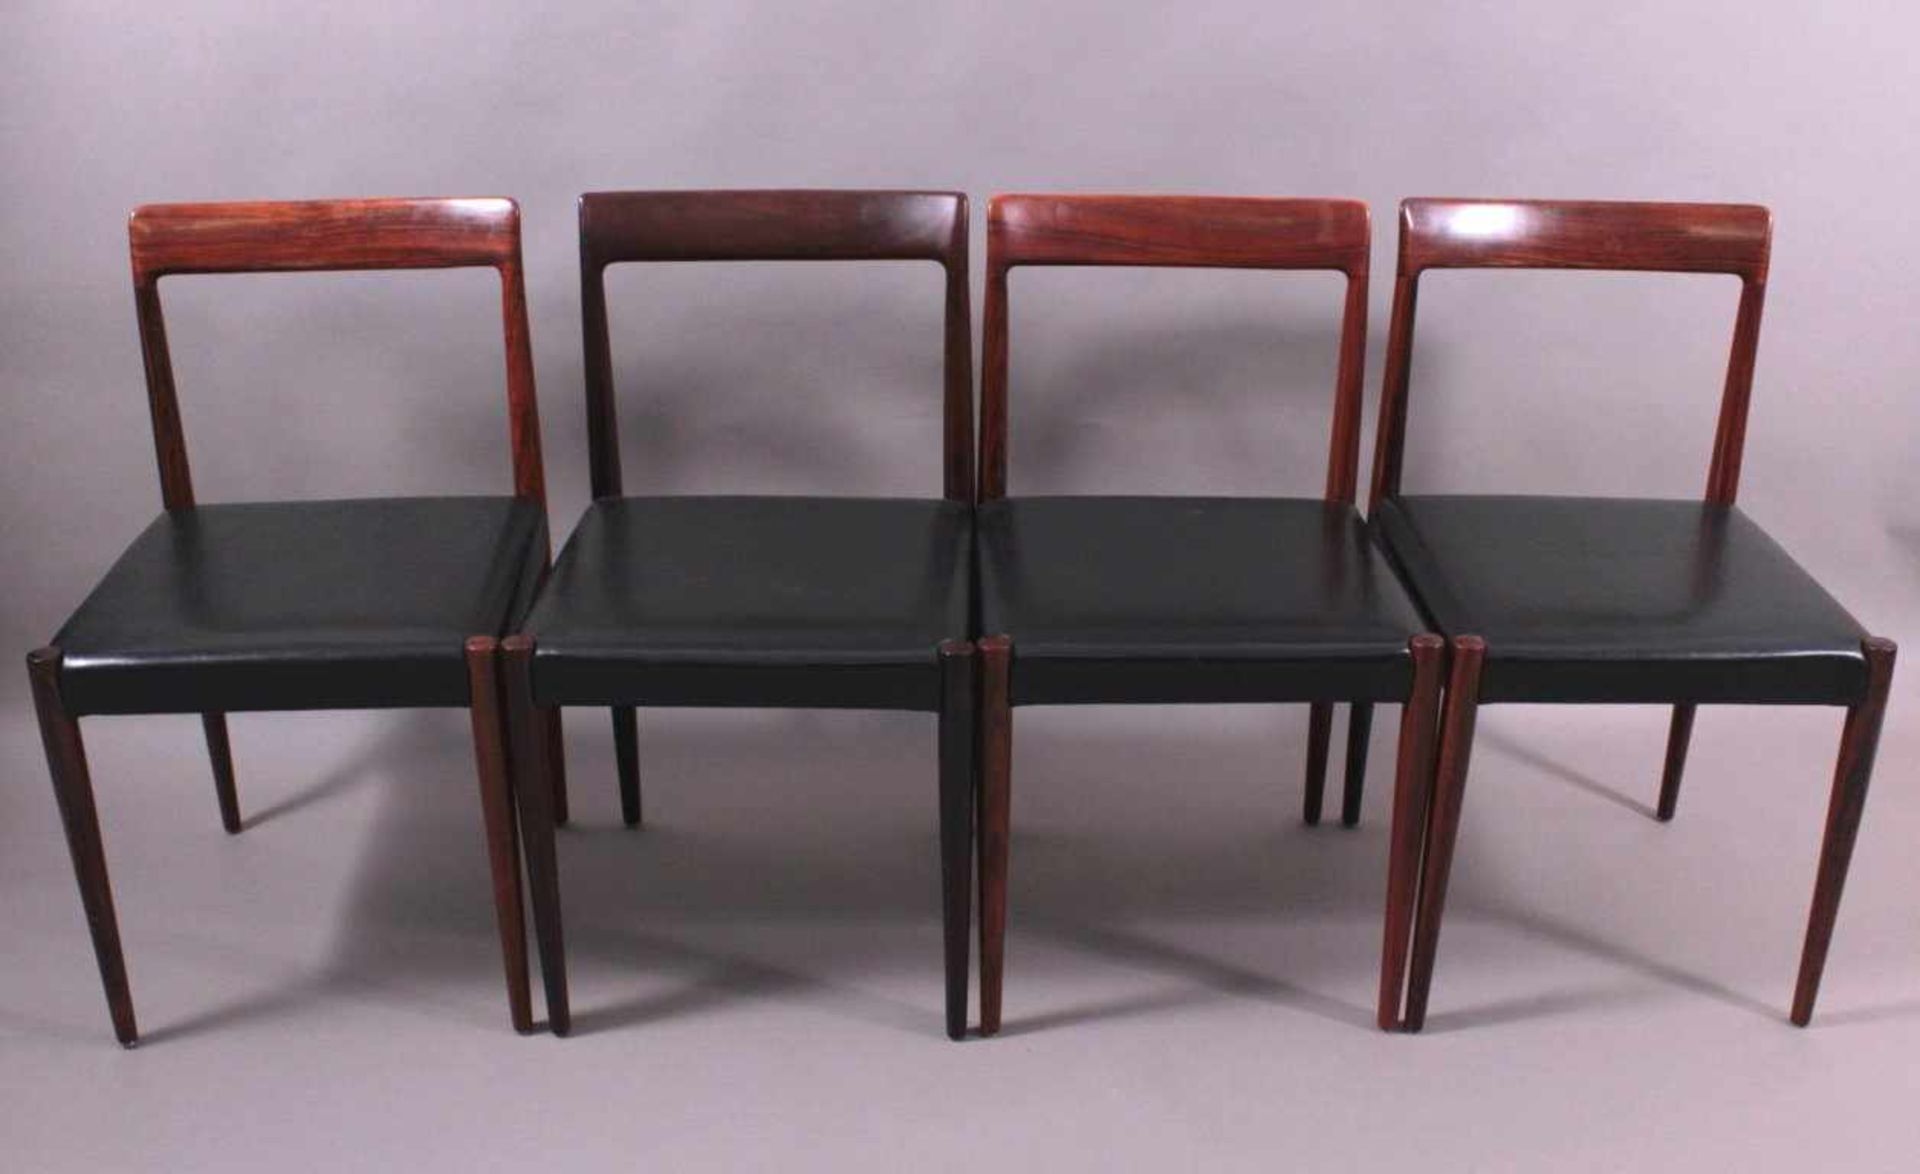 Palisander Esszimmerstühle von Lübke, 4er SetDesign 1960 bis 1969. Palisander mit schwarzem